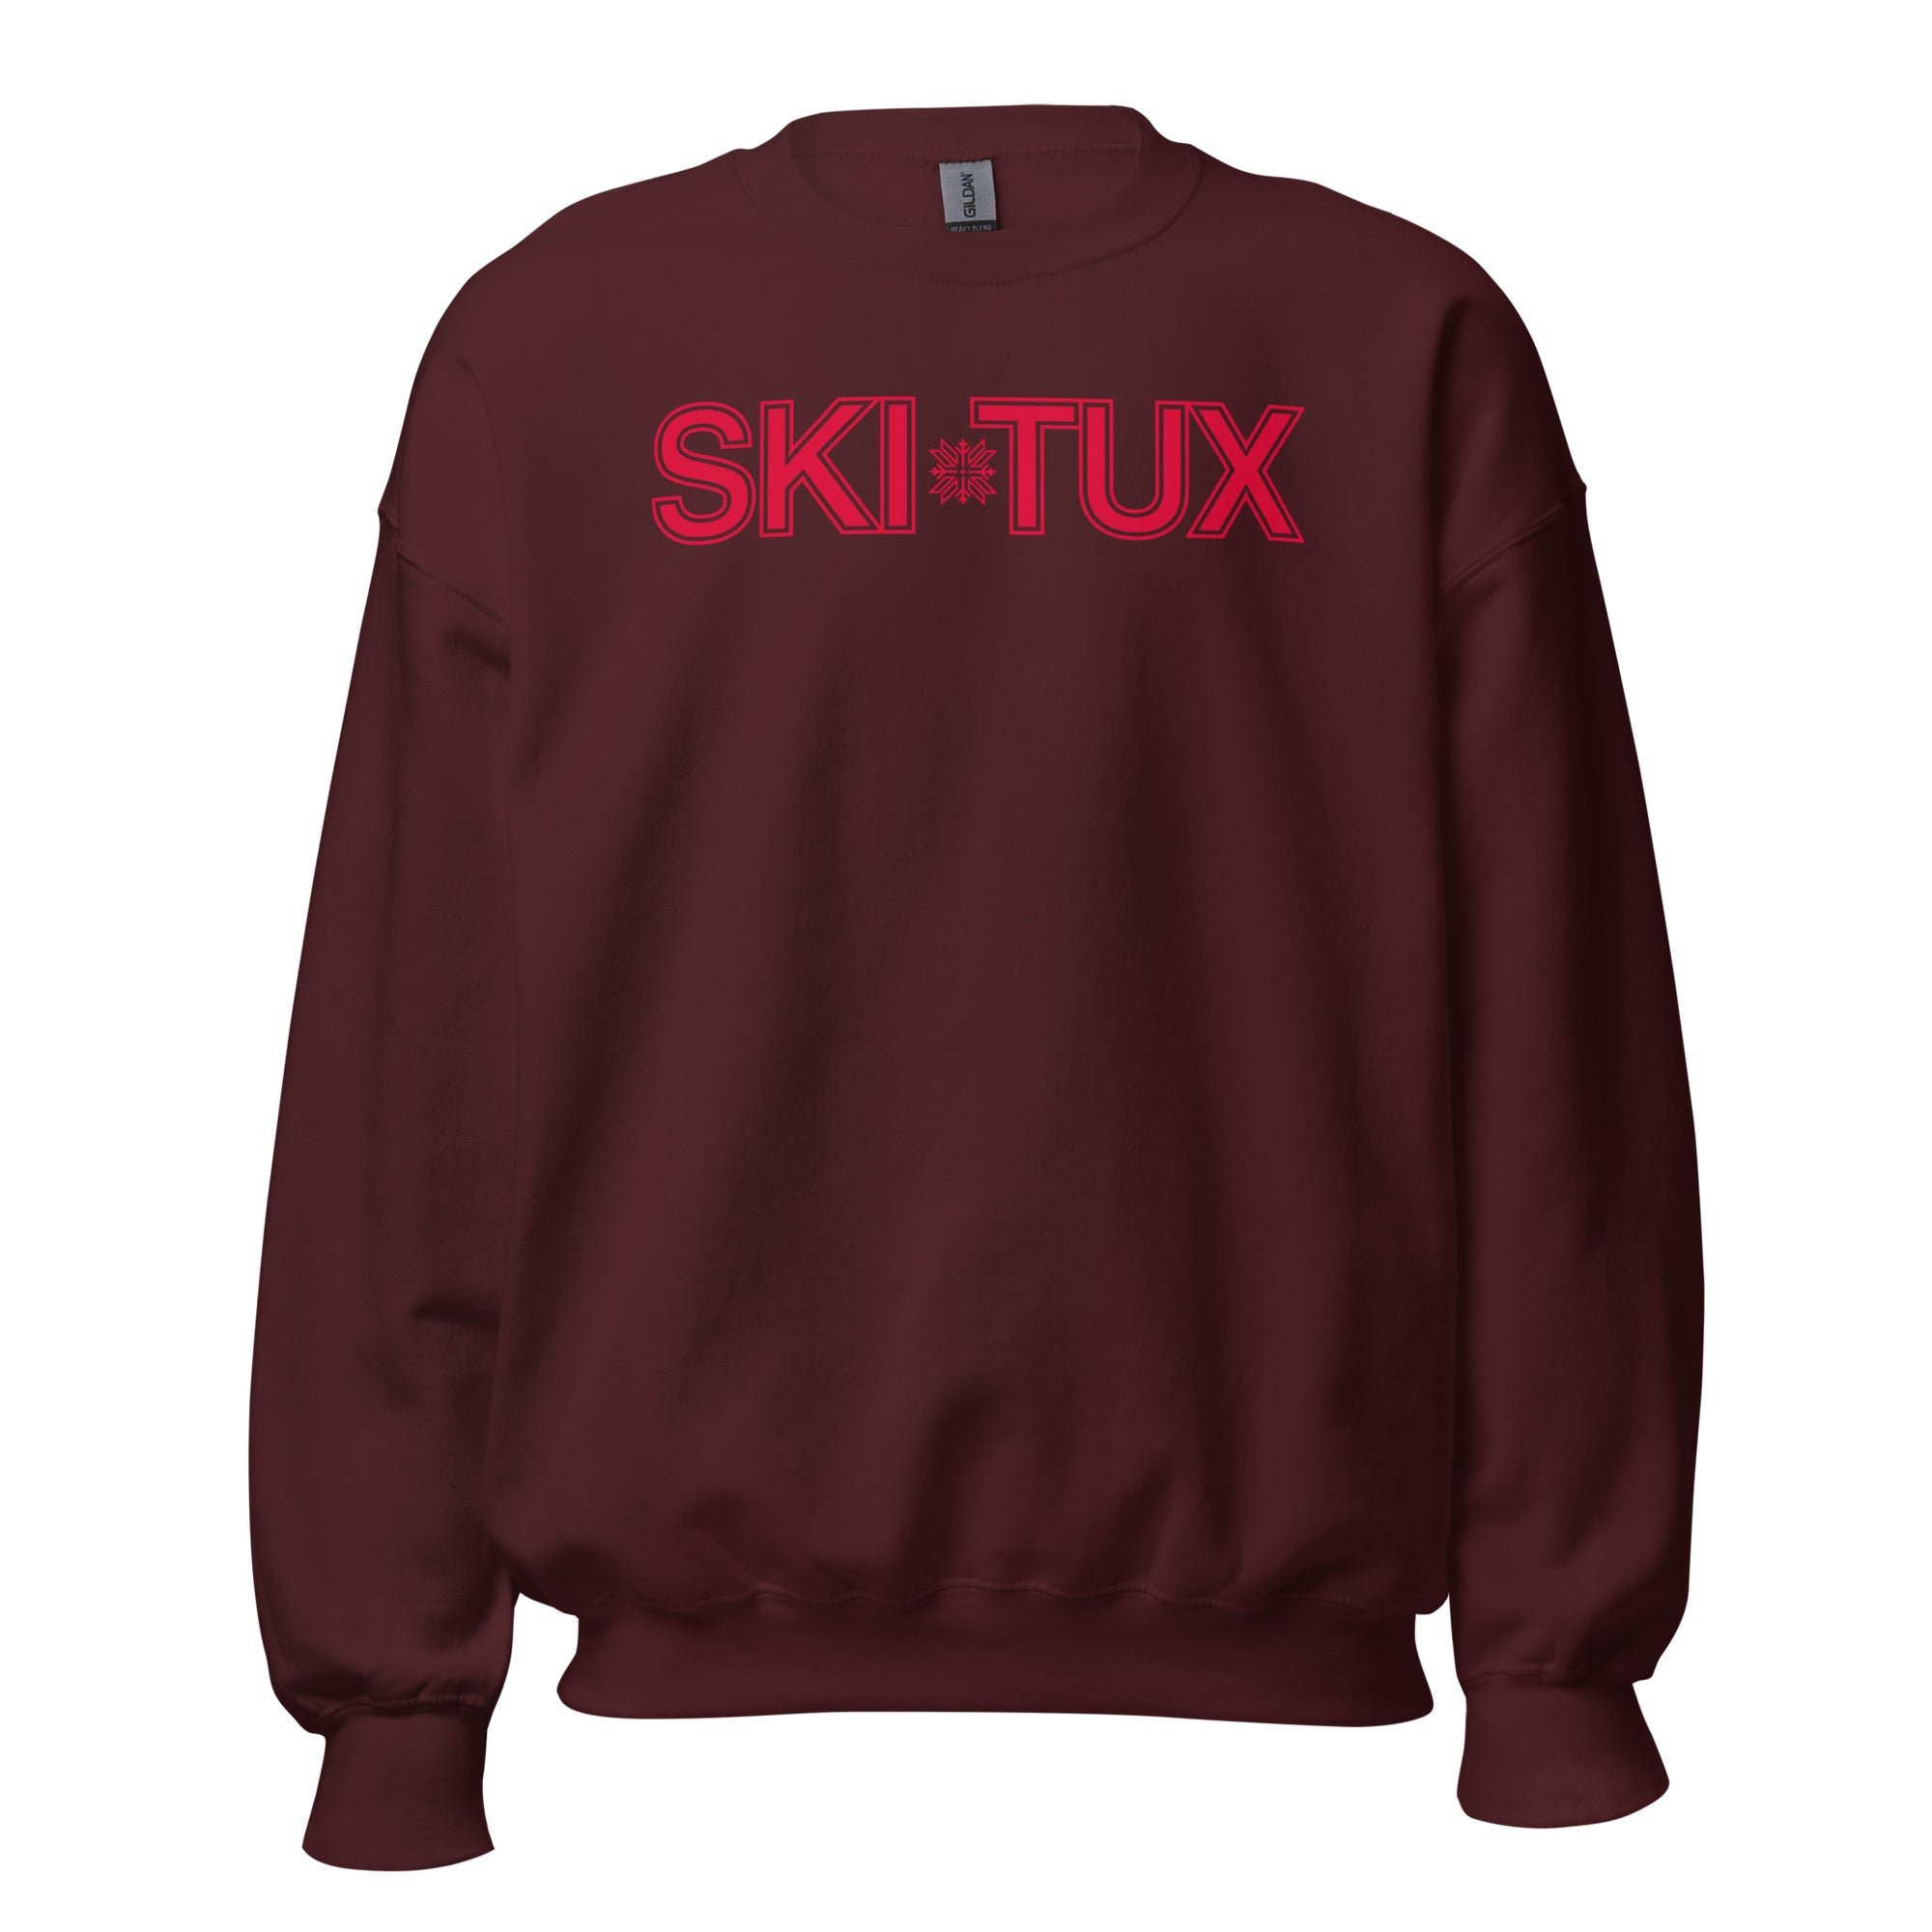 Ski Tux Sweatshirt